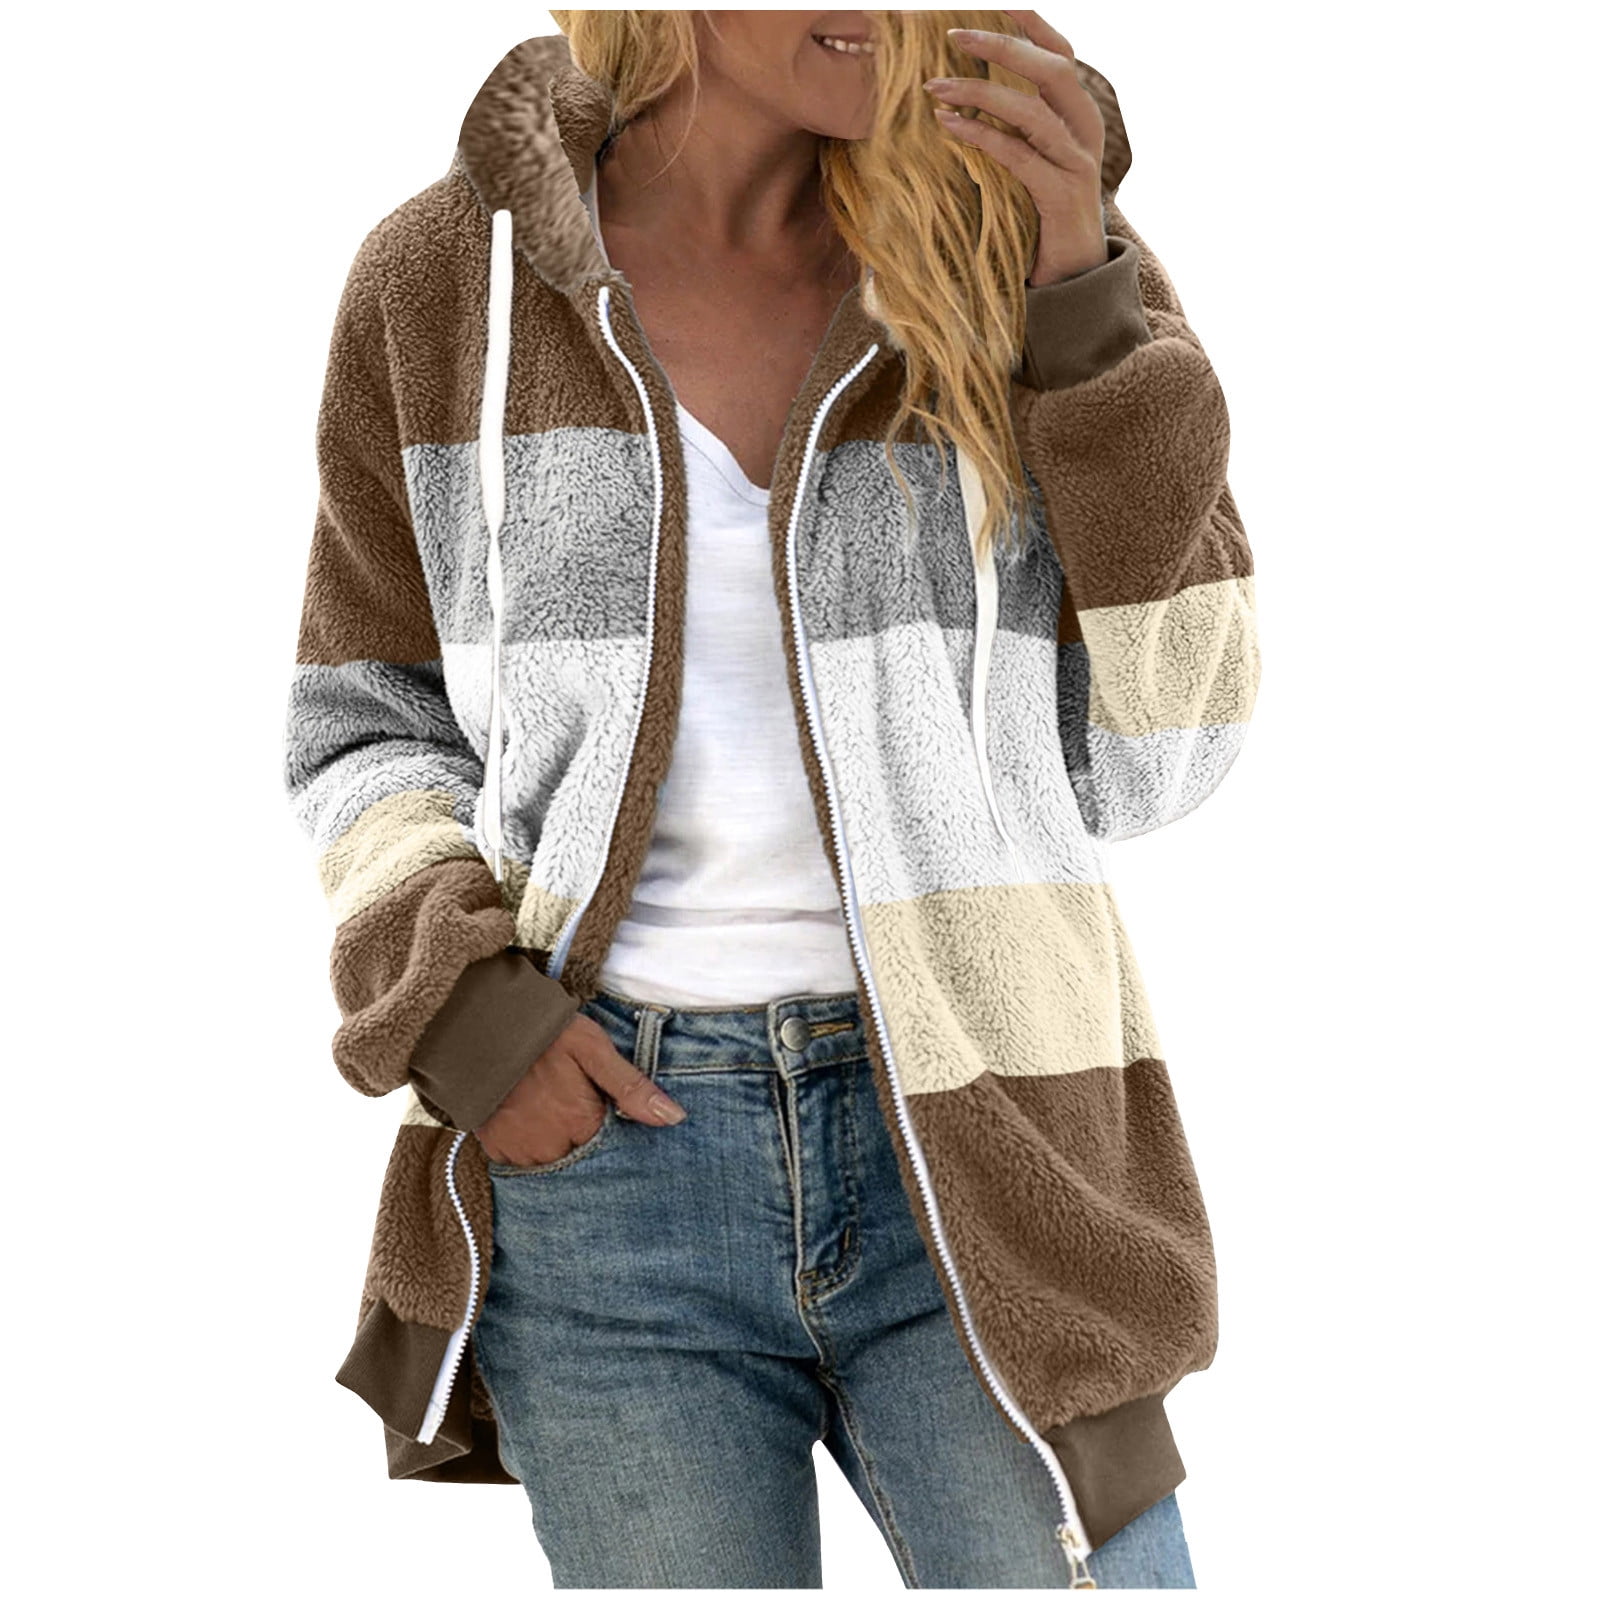 Fesfesfes Fashion Women's Fleece Jacket Zipper Flannel Jacket Tops Long  Sleeve Shirt Color Match Hooded Blouse Sweatshirt On Sale 